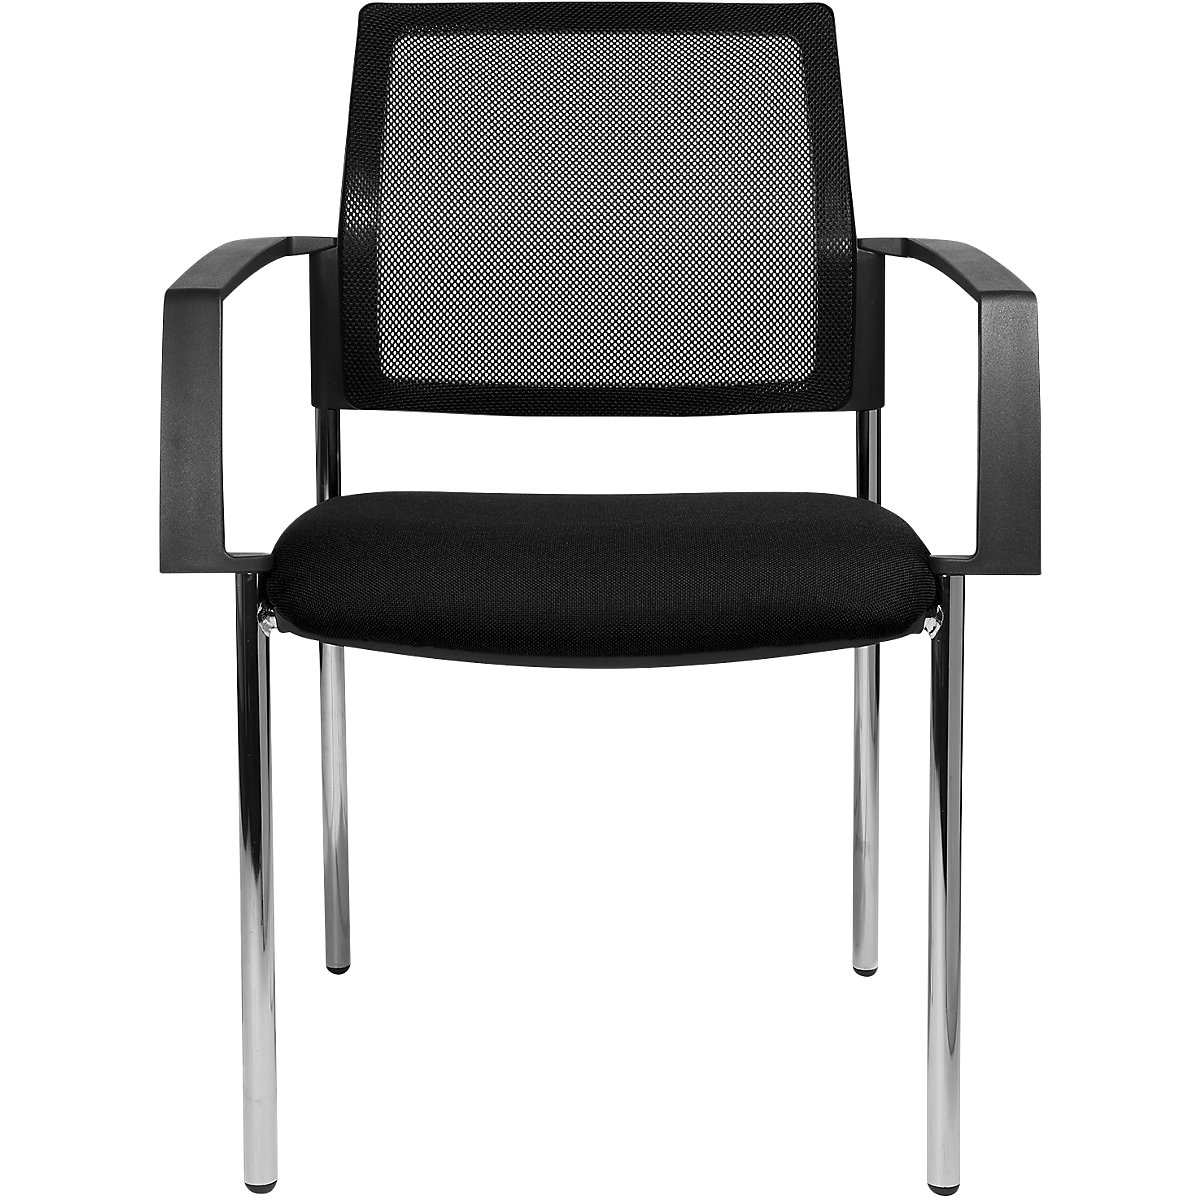 Složiva stolica s mrežastim naslonom – Topstar, 4 noge, pak. 2 kom., sjedalo u crnoj boji, kromirano postolje